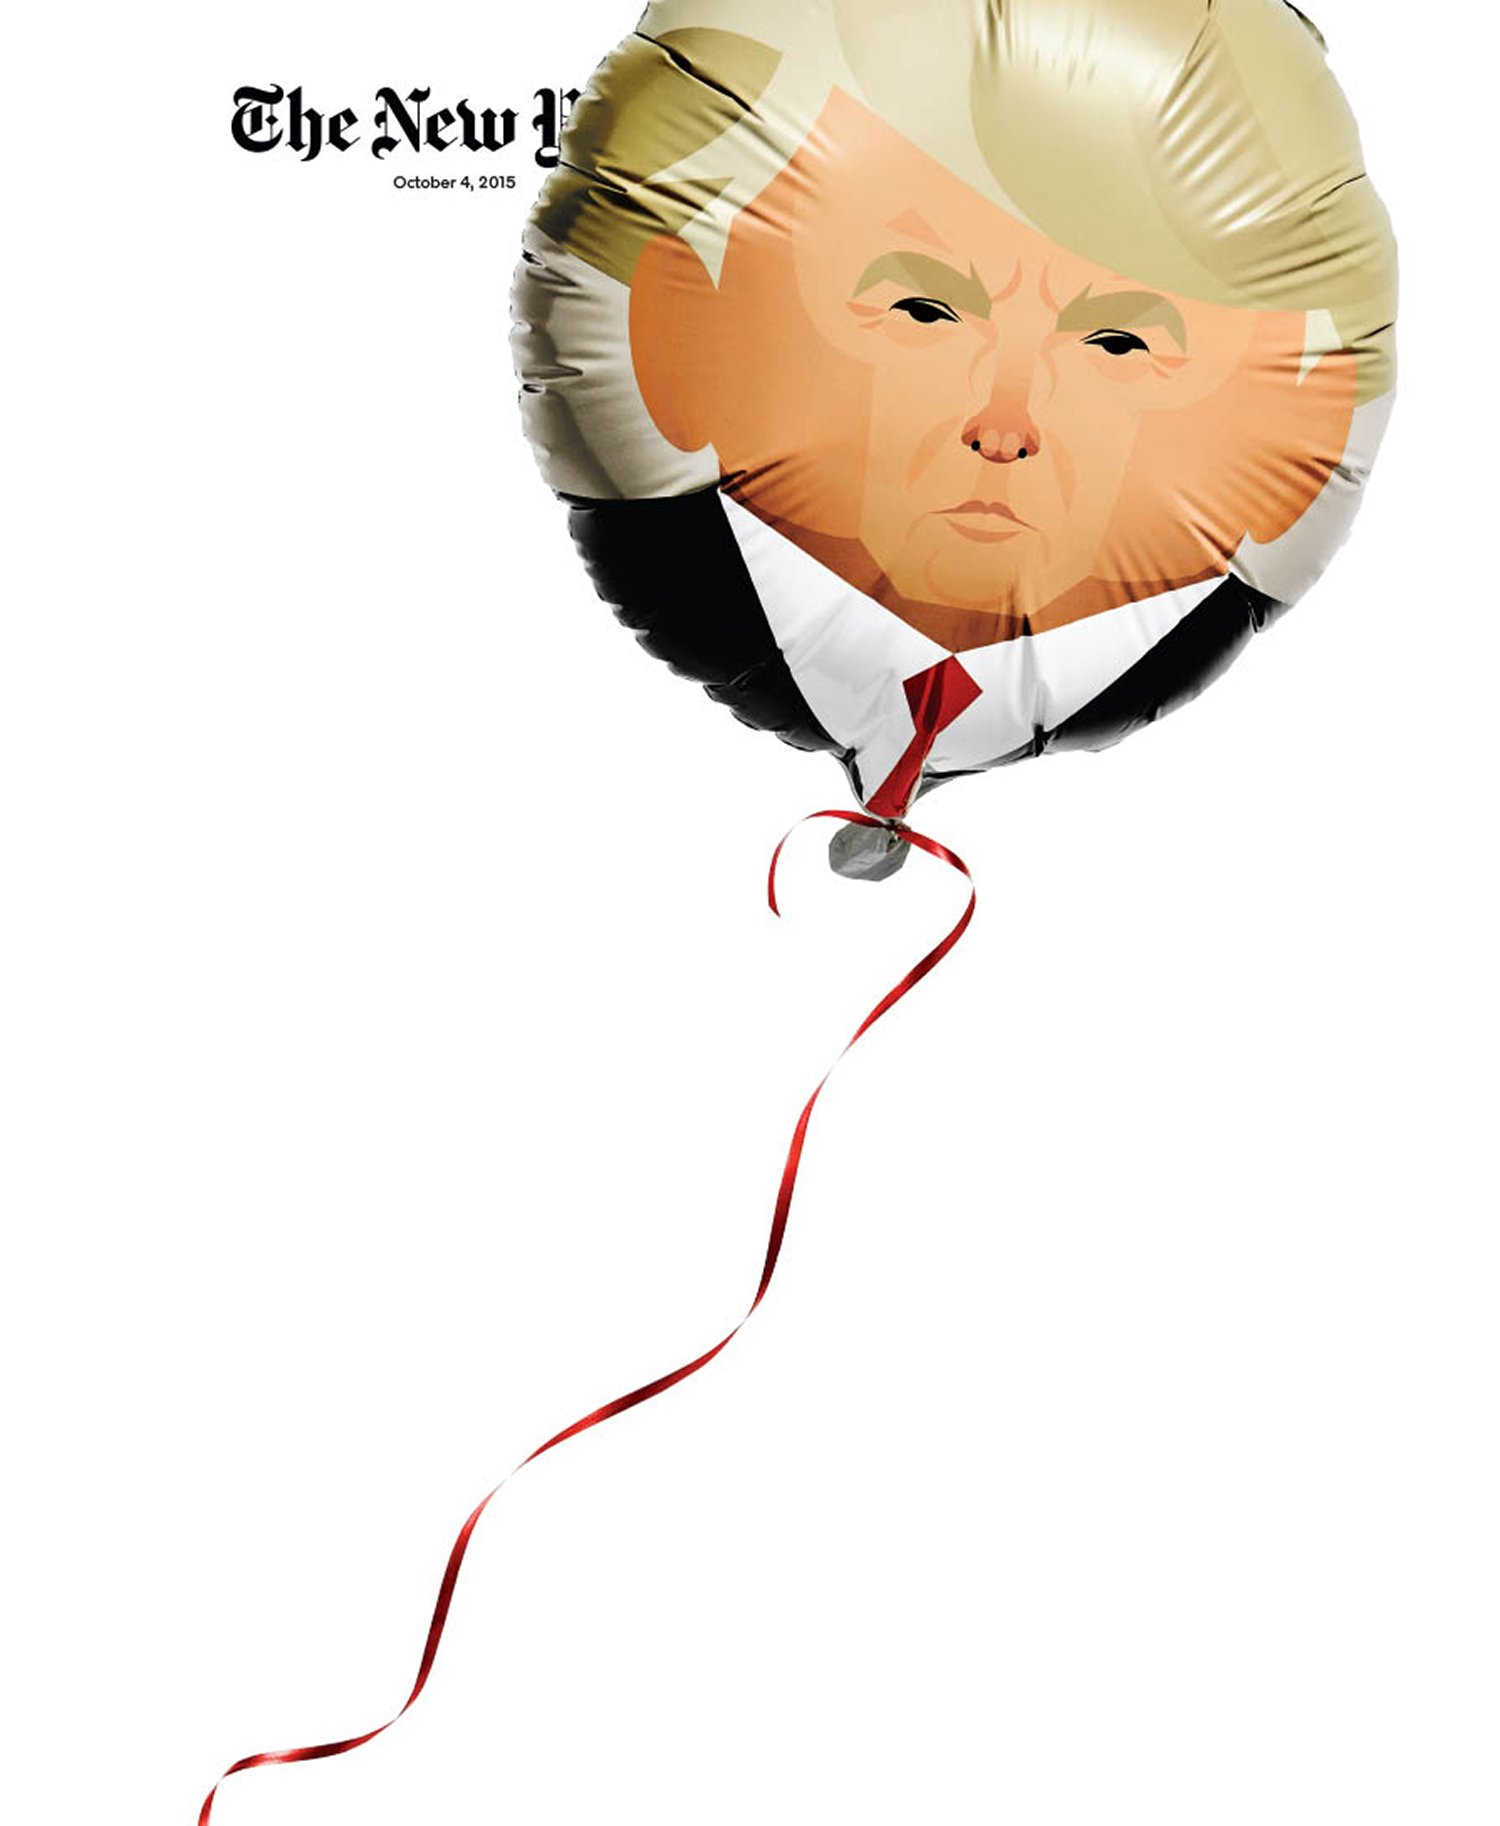 balloon-trump.jpg